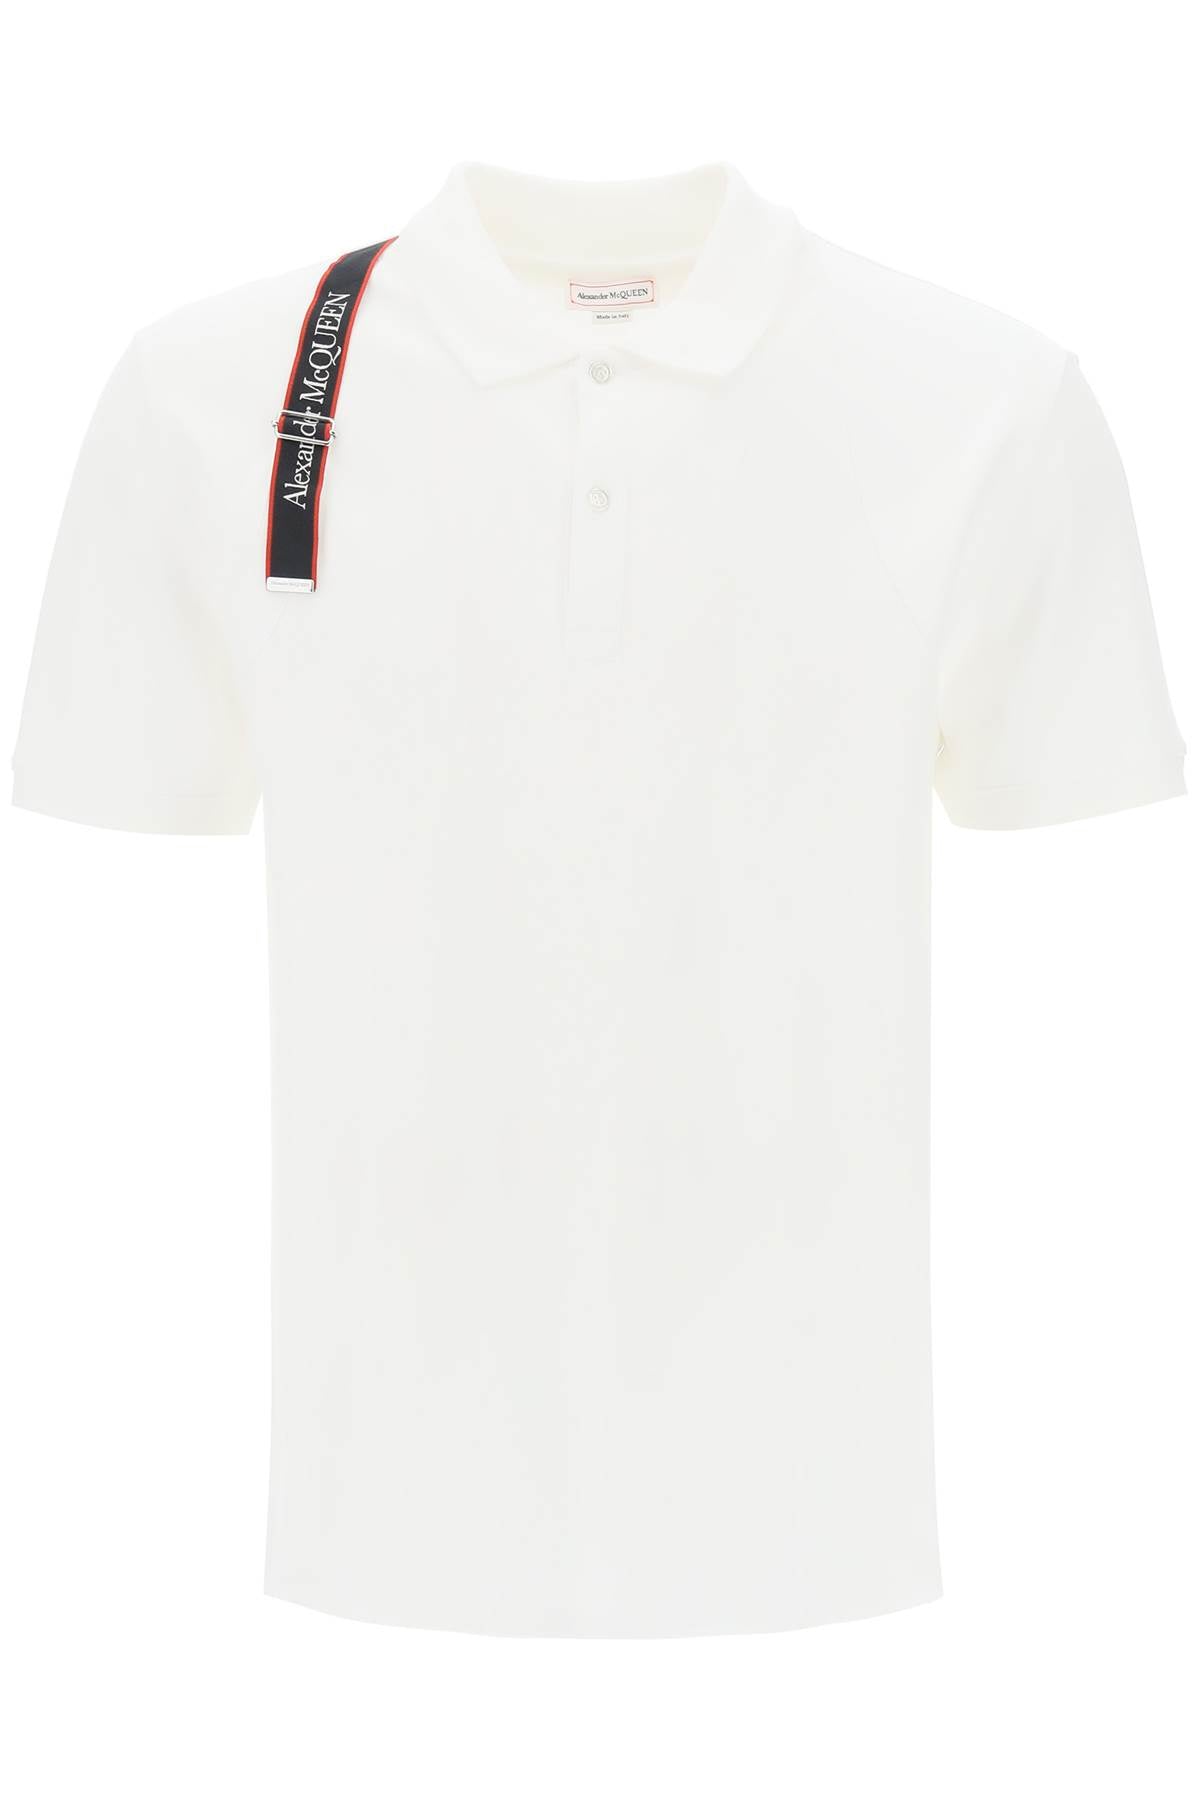 Alexander mcqueen harness polo shirt in piqué with selvedge logo-0